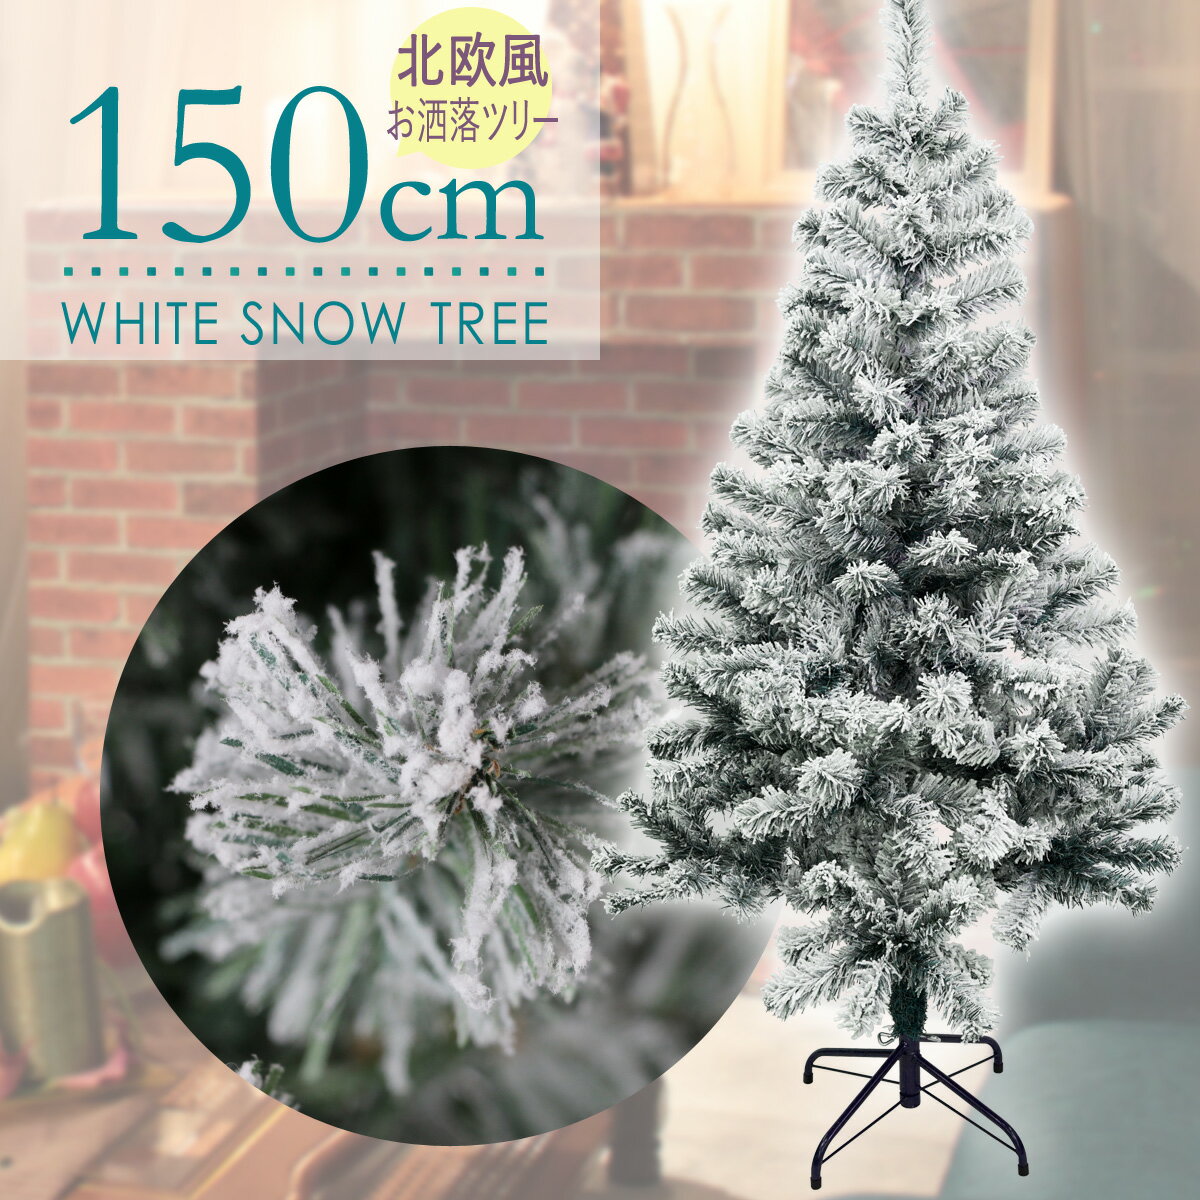 クリスマスツリー 150cm フロストツリー 雪付き フランクヒルズ 木 スノーツリー 北欧 おしゃれ 雪 ヌードツリー 雪化粧 ホワイト 白